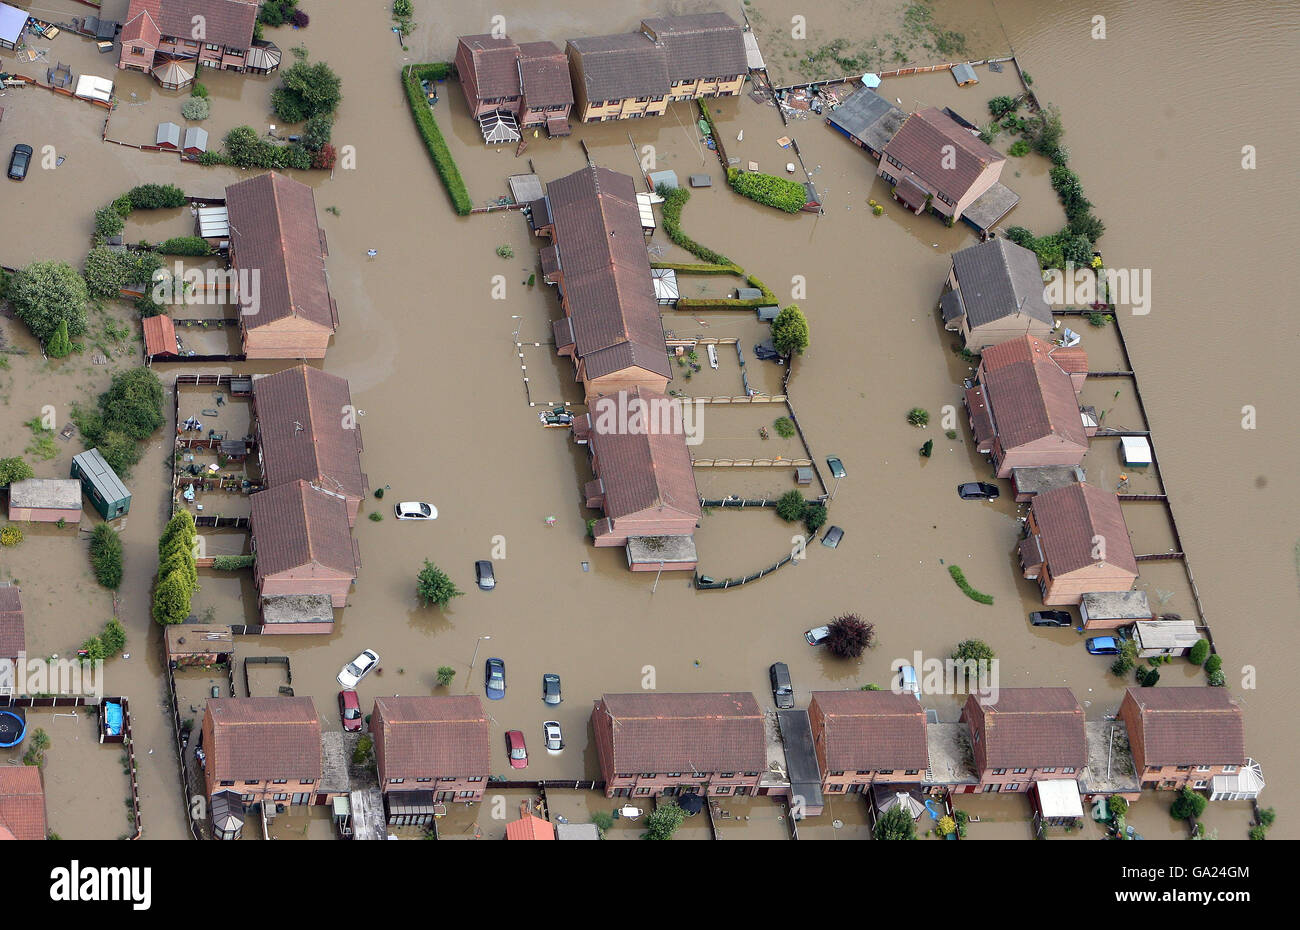 Luftaufnahme des Dorfes Catcliffe in der Nähe von Sheffield, das nach zwei Tagen heftigen Regens, die Überschwemmungen in Yorkshire verursacht hat, unter Wasser steht. Stockfoto